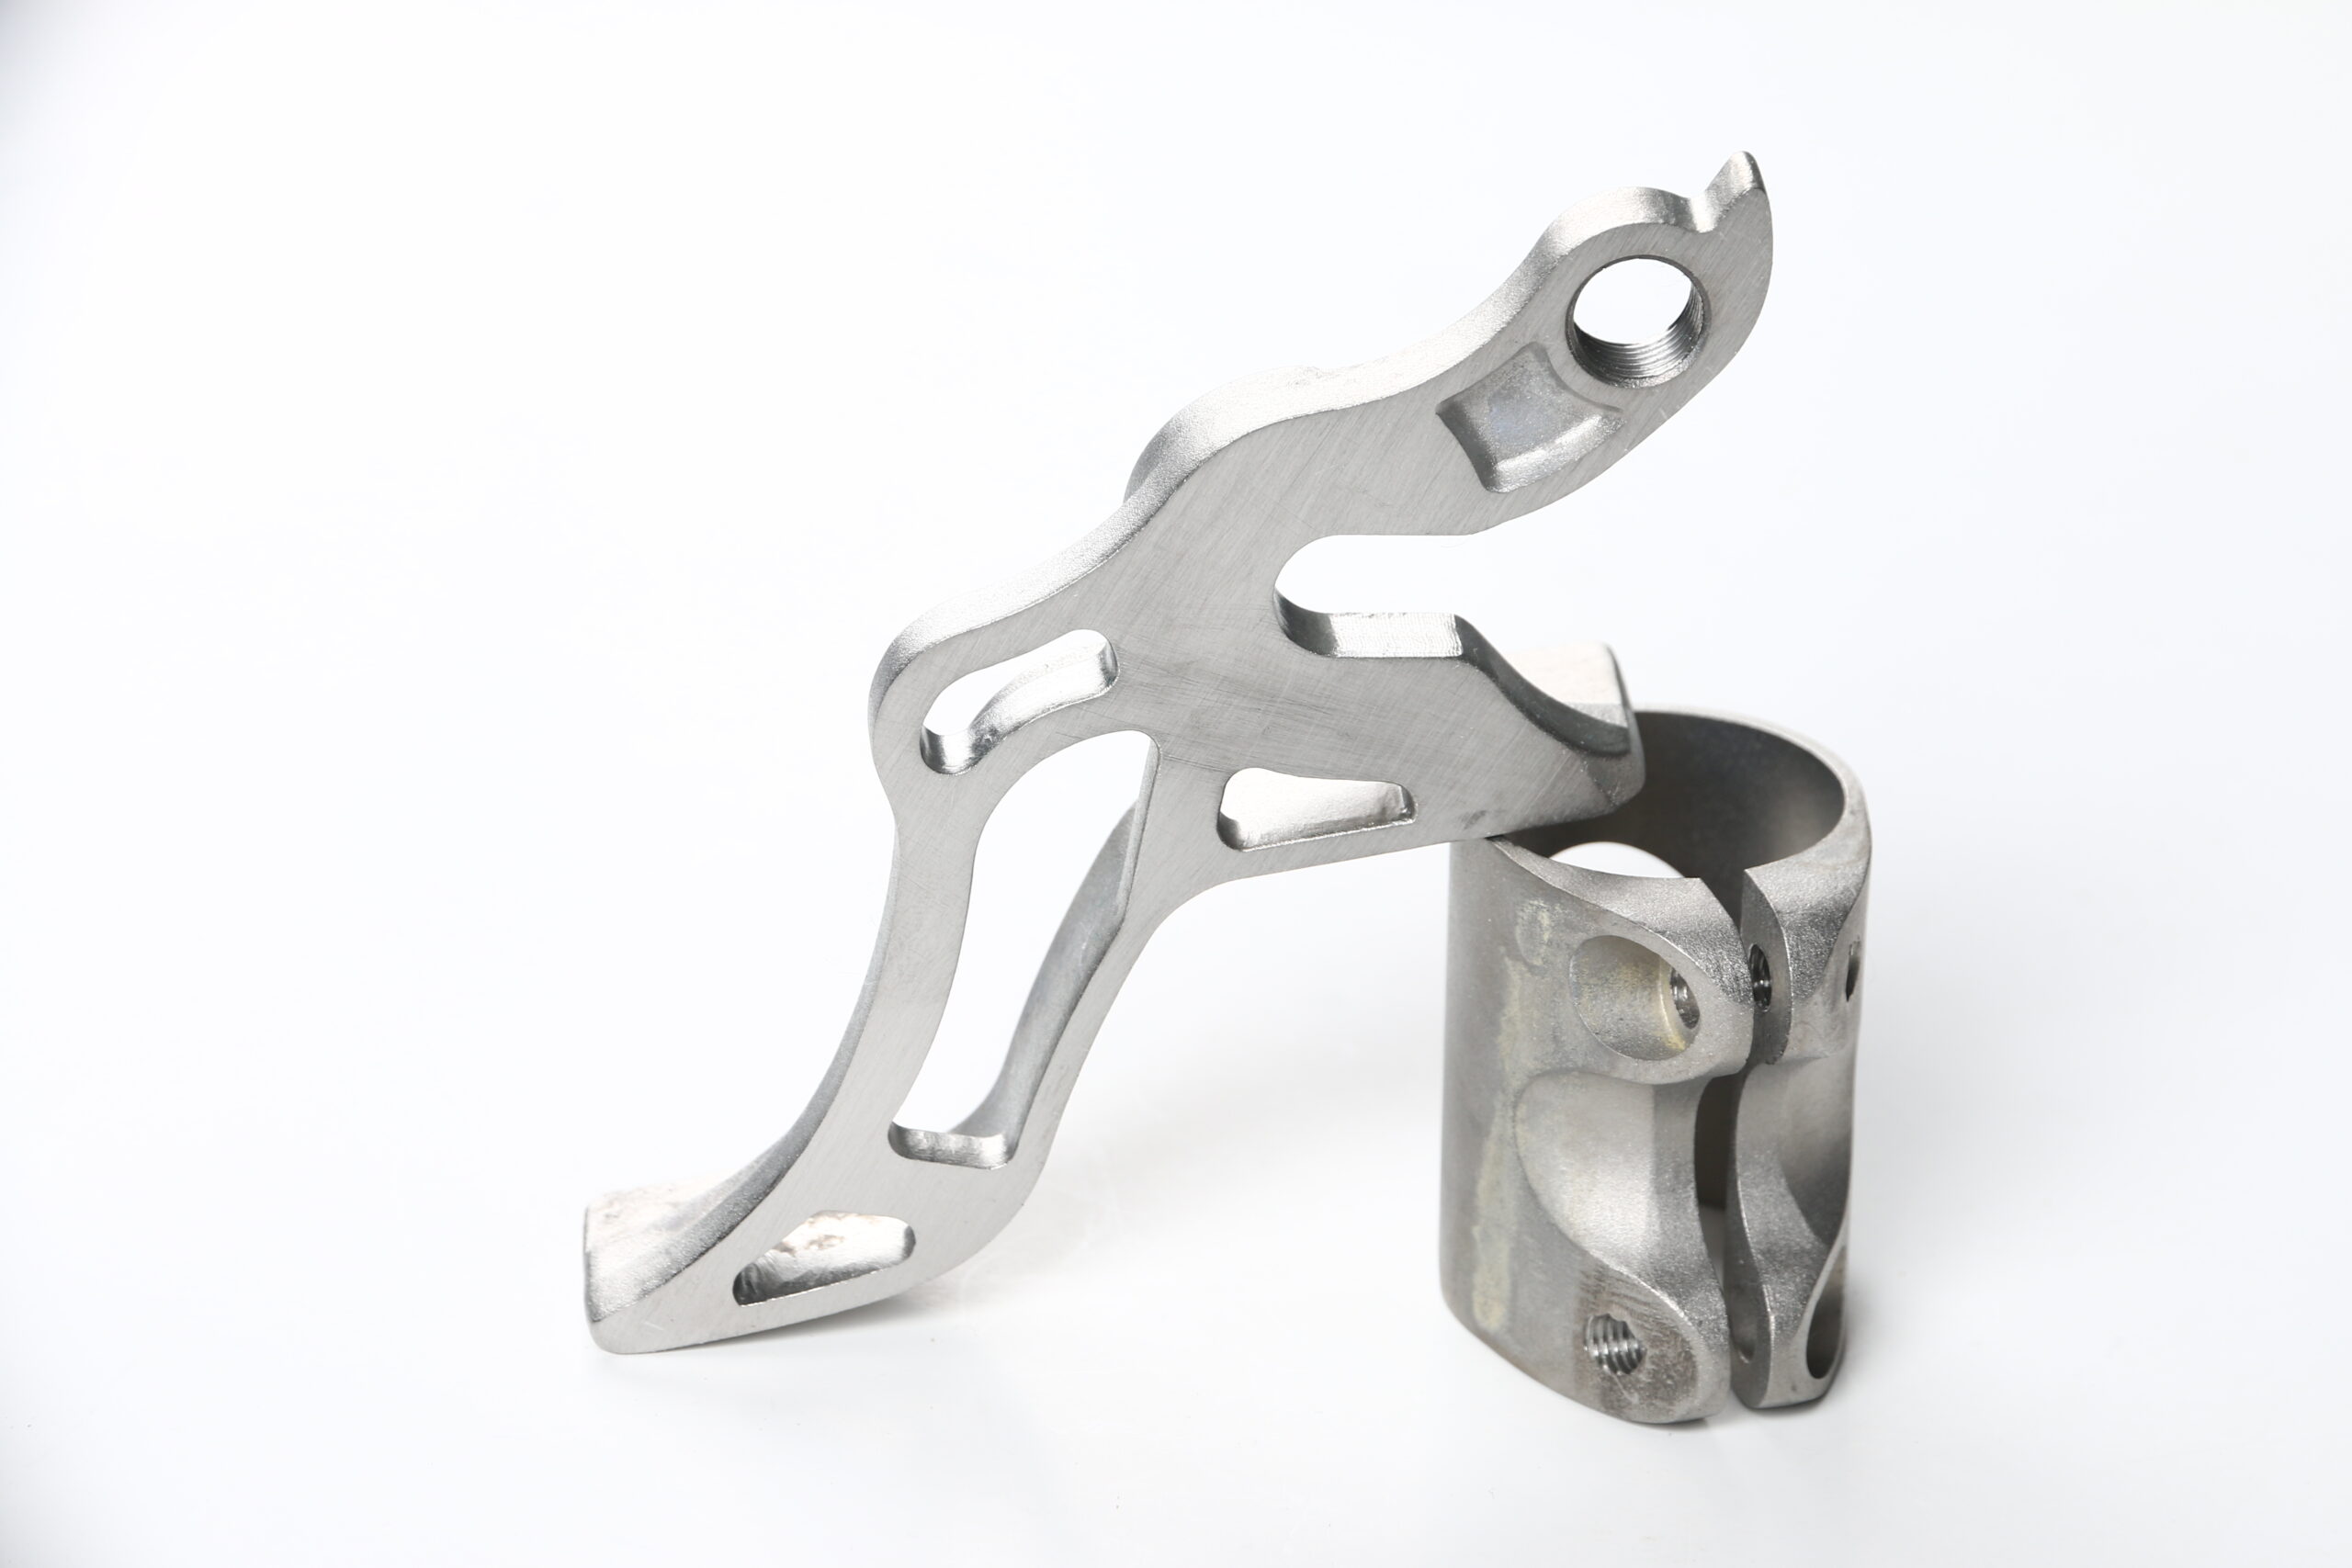 Titanium bike parts casting 1